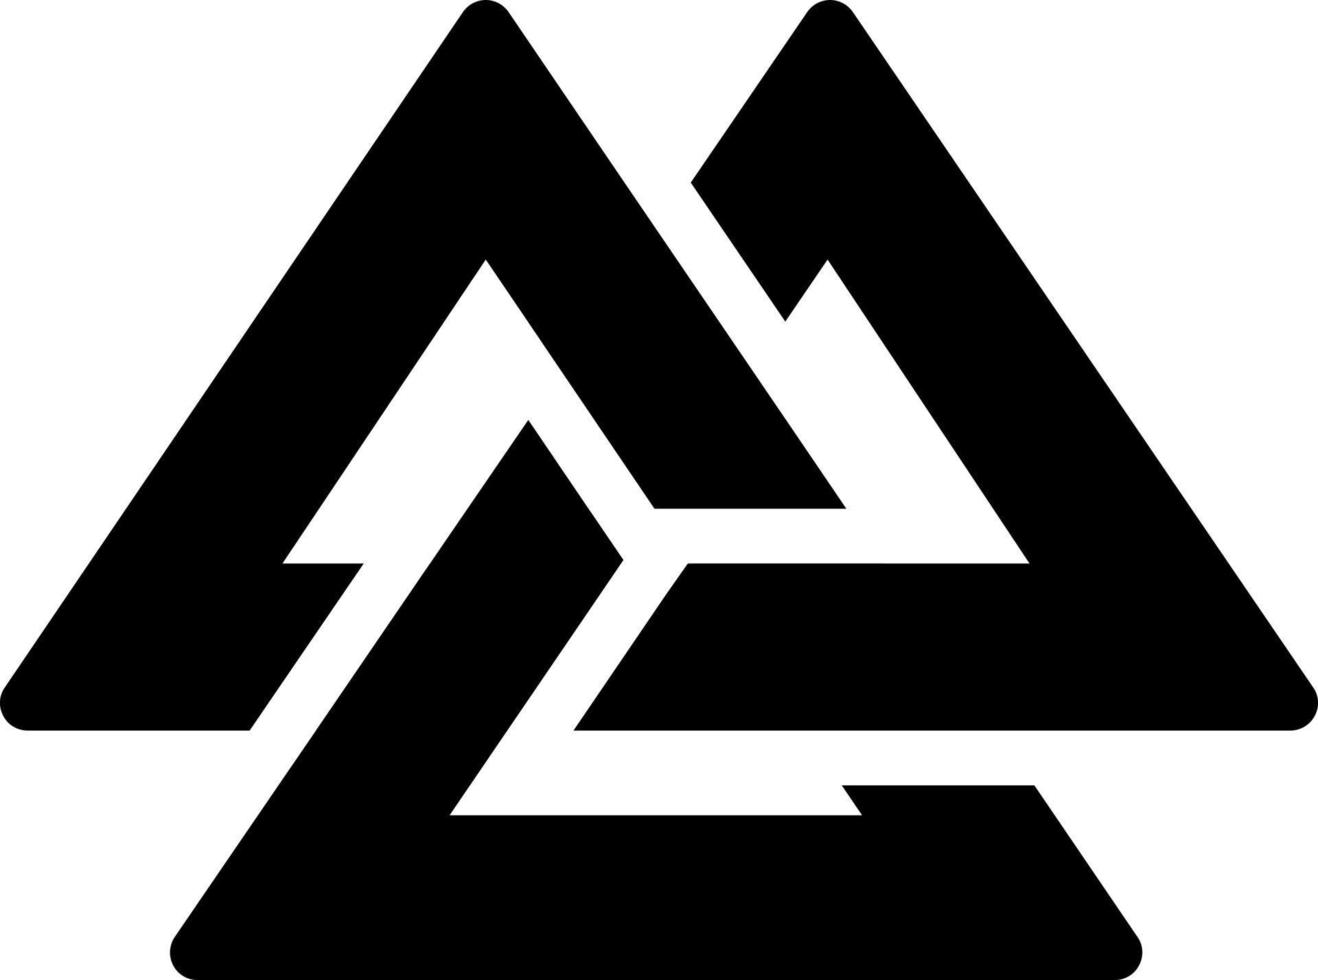 nordisch Vektor Illustration auf ein hintergrund.premium Qualität symbole.vektor Symbole zum Konzept und Grafik Design.